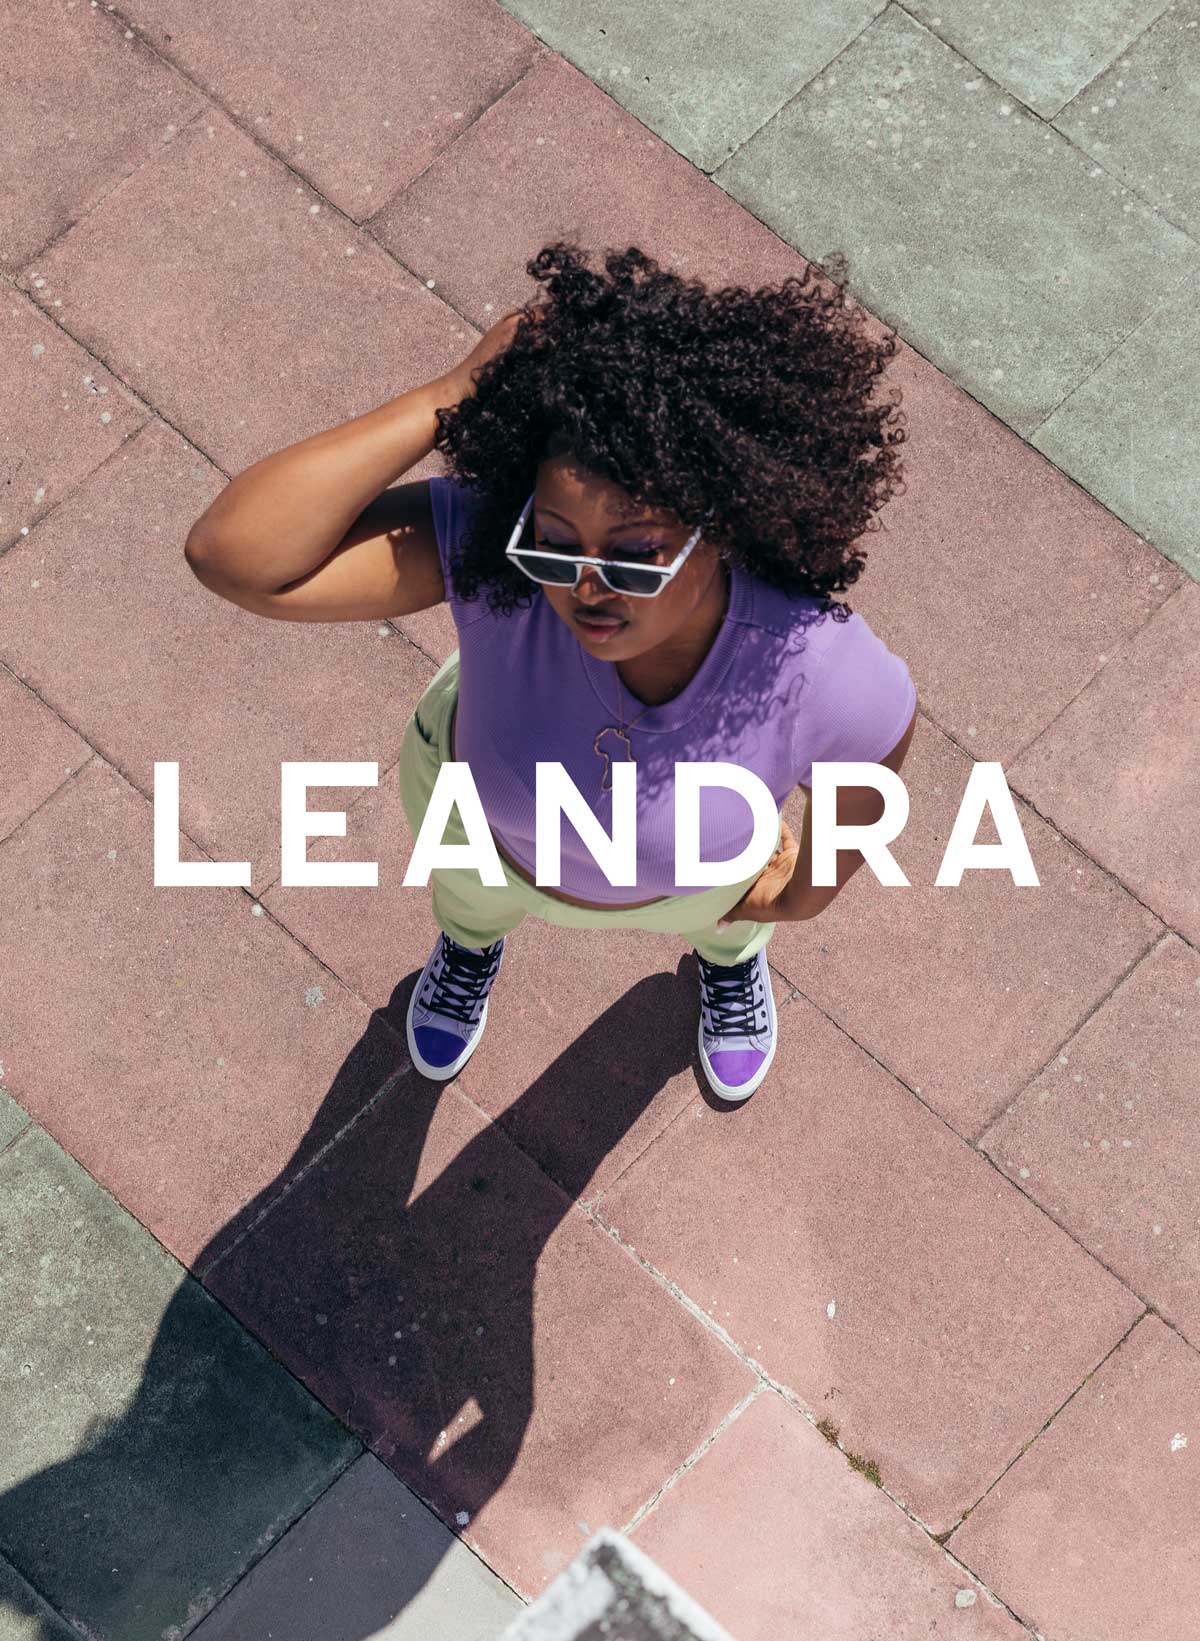 Leandra in camicia viola e occhiali da sole in piedi su un marciapiede, indossando Diverge sneakers, promuovendo l'impatto sociale e le scarpe personalizzate attraverso il progetto Imagine.